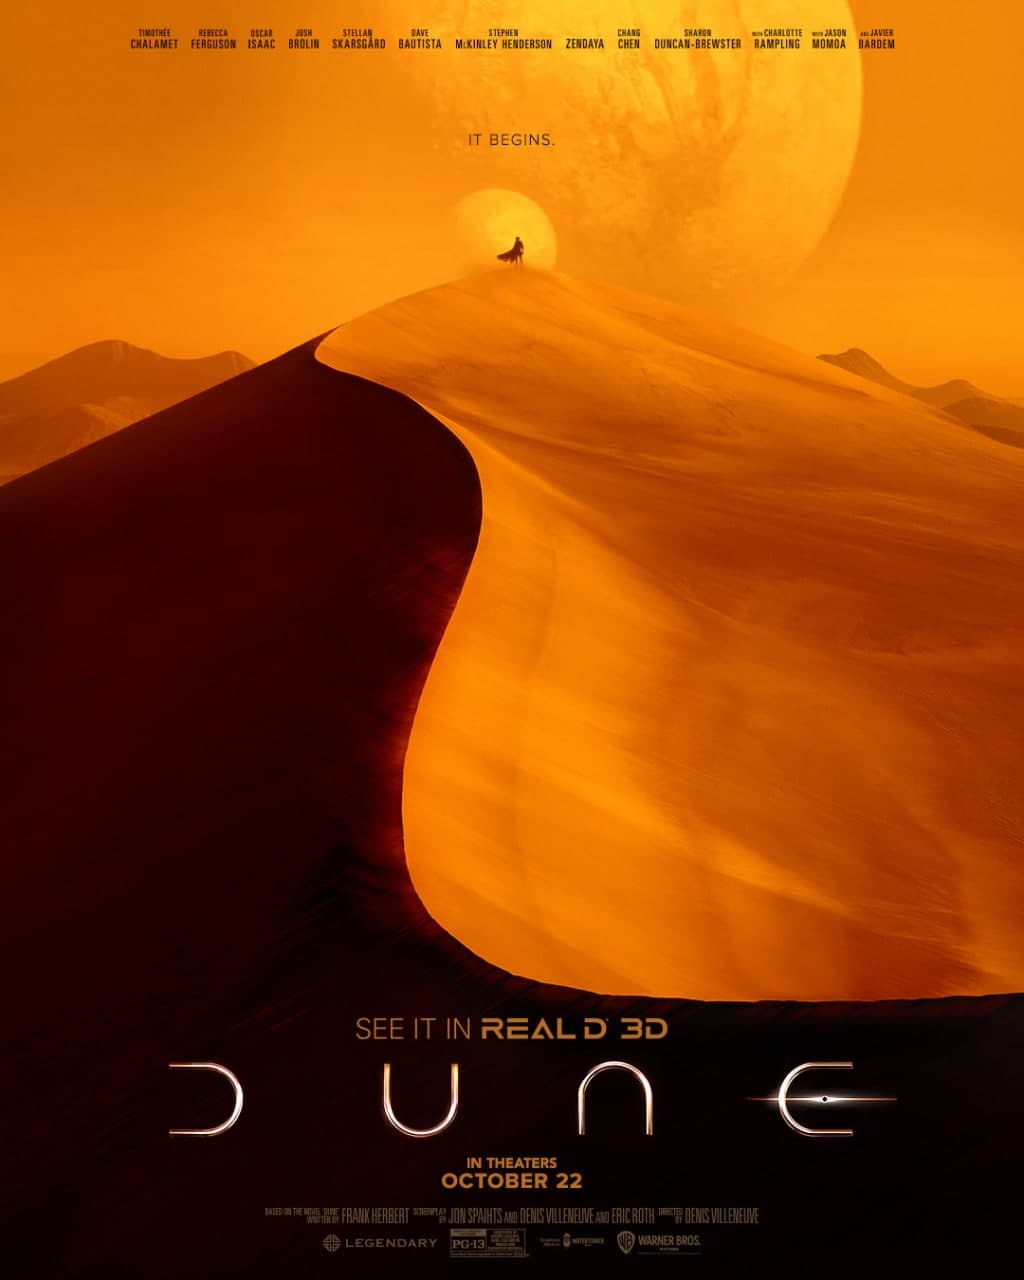 پوستر جدید و اختصاصی نمایش فیلم Dune در سینماهای RealD 3D